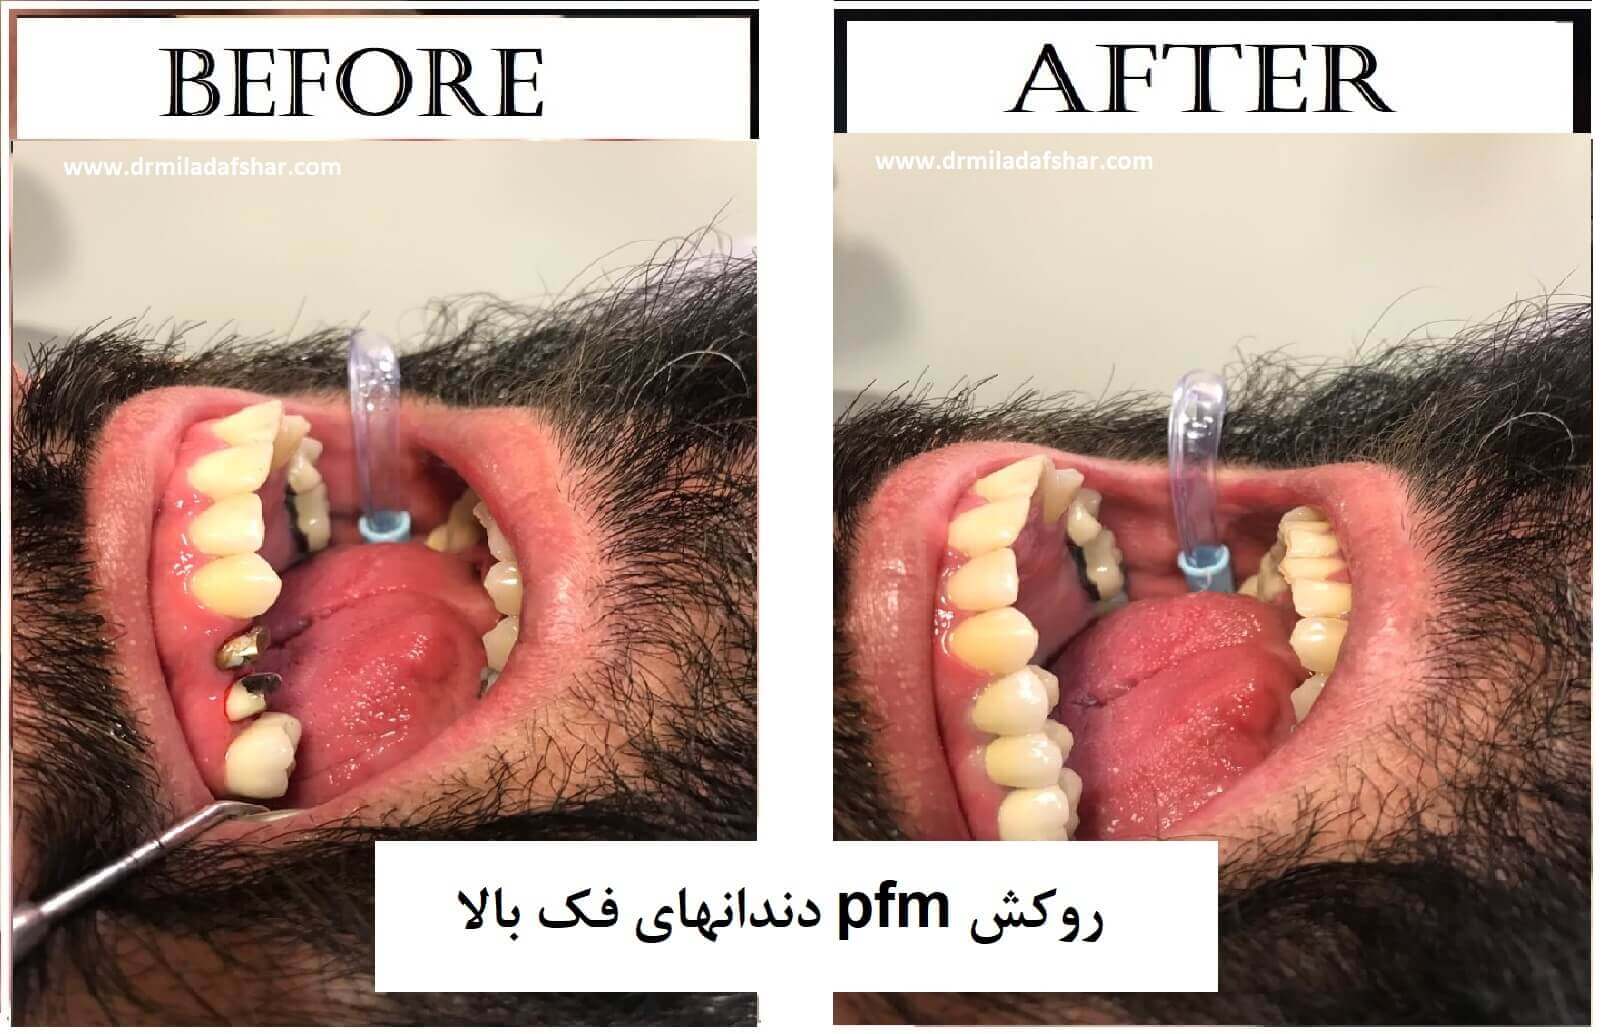 عکس قبل و بعد از روکش دندان